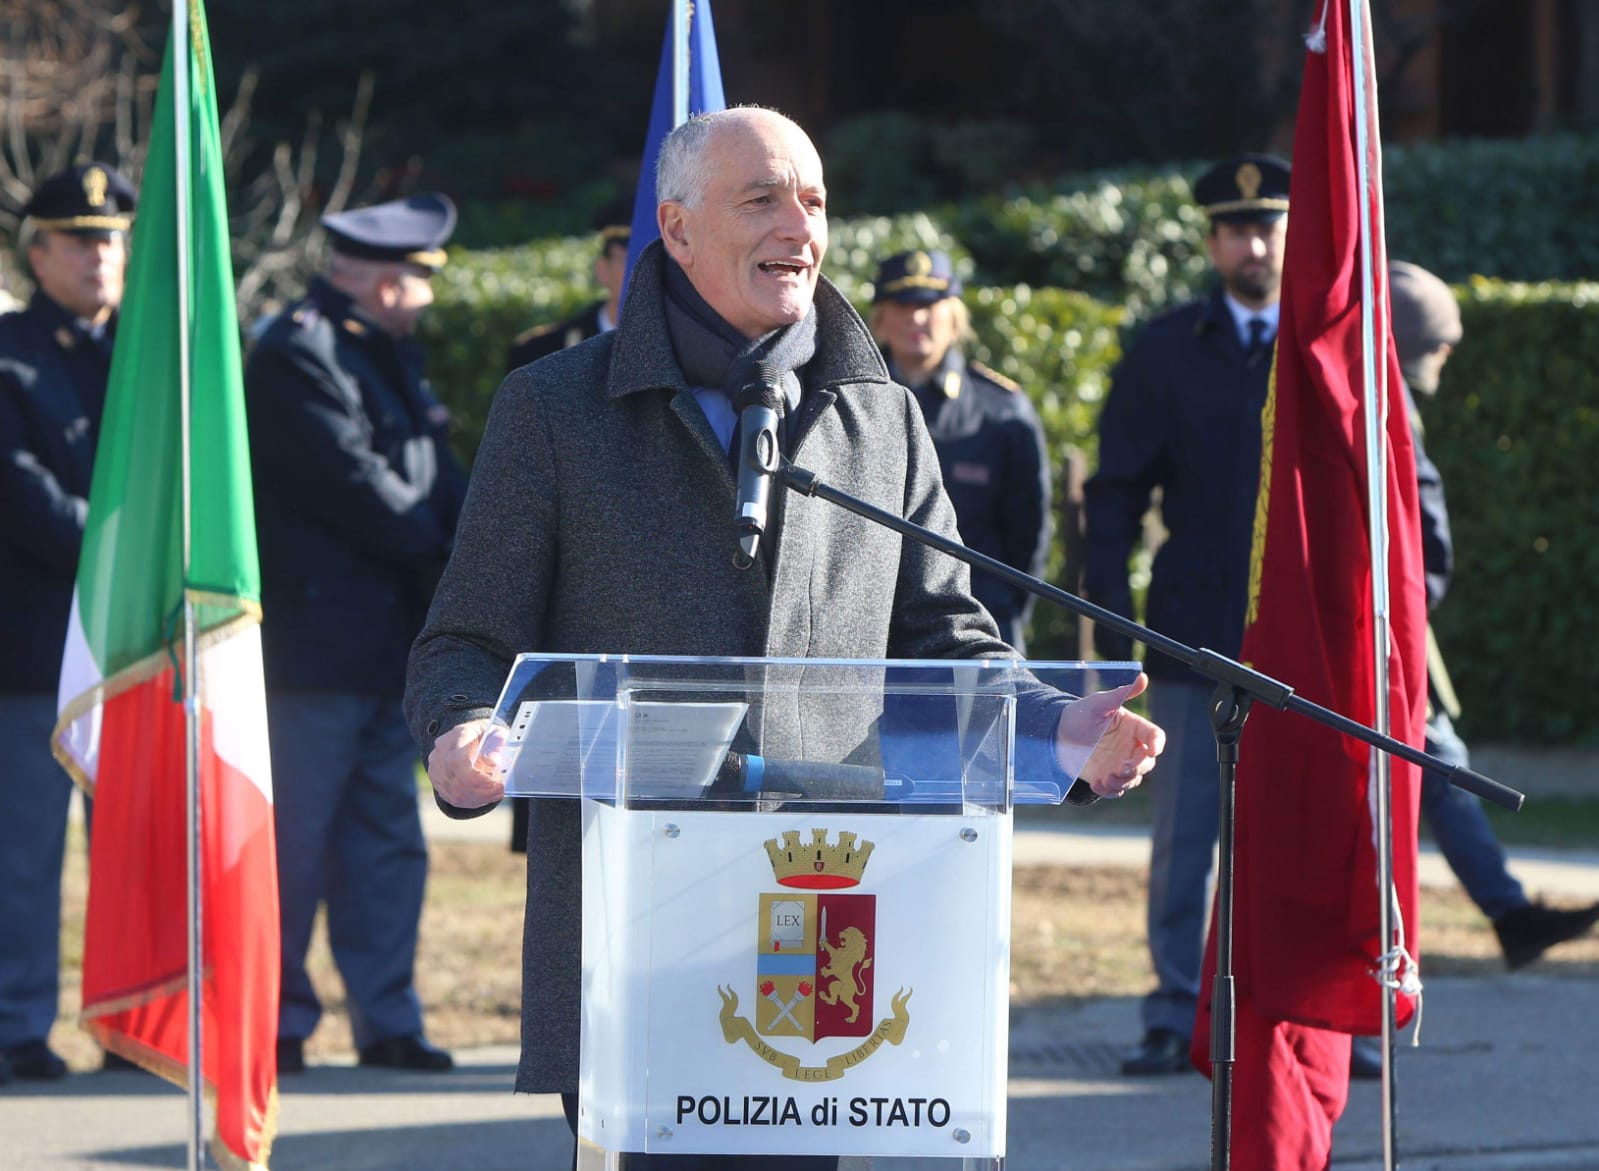 Le celebrazioni per l’intitolazione di un parco pubblico di Brescia al commissario Morello Alcamo